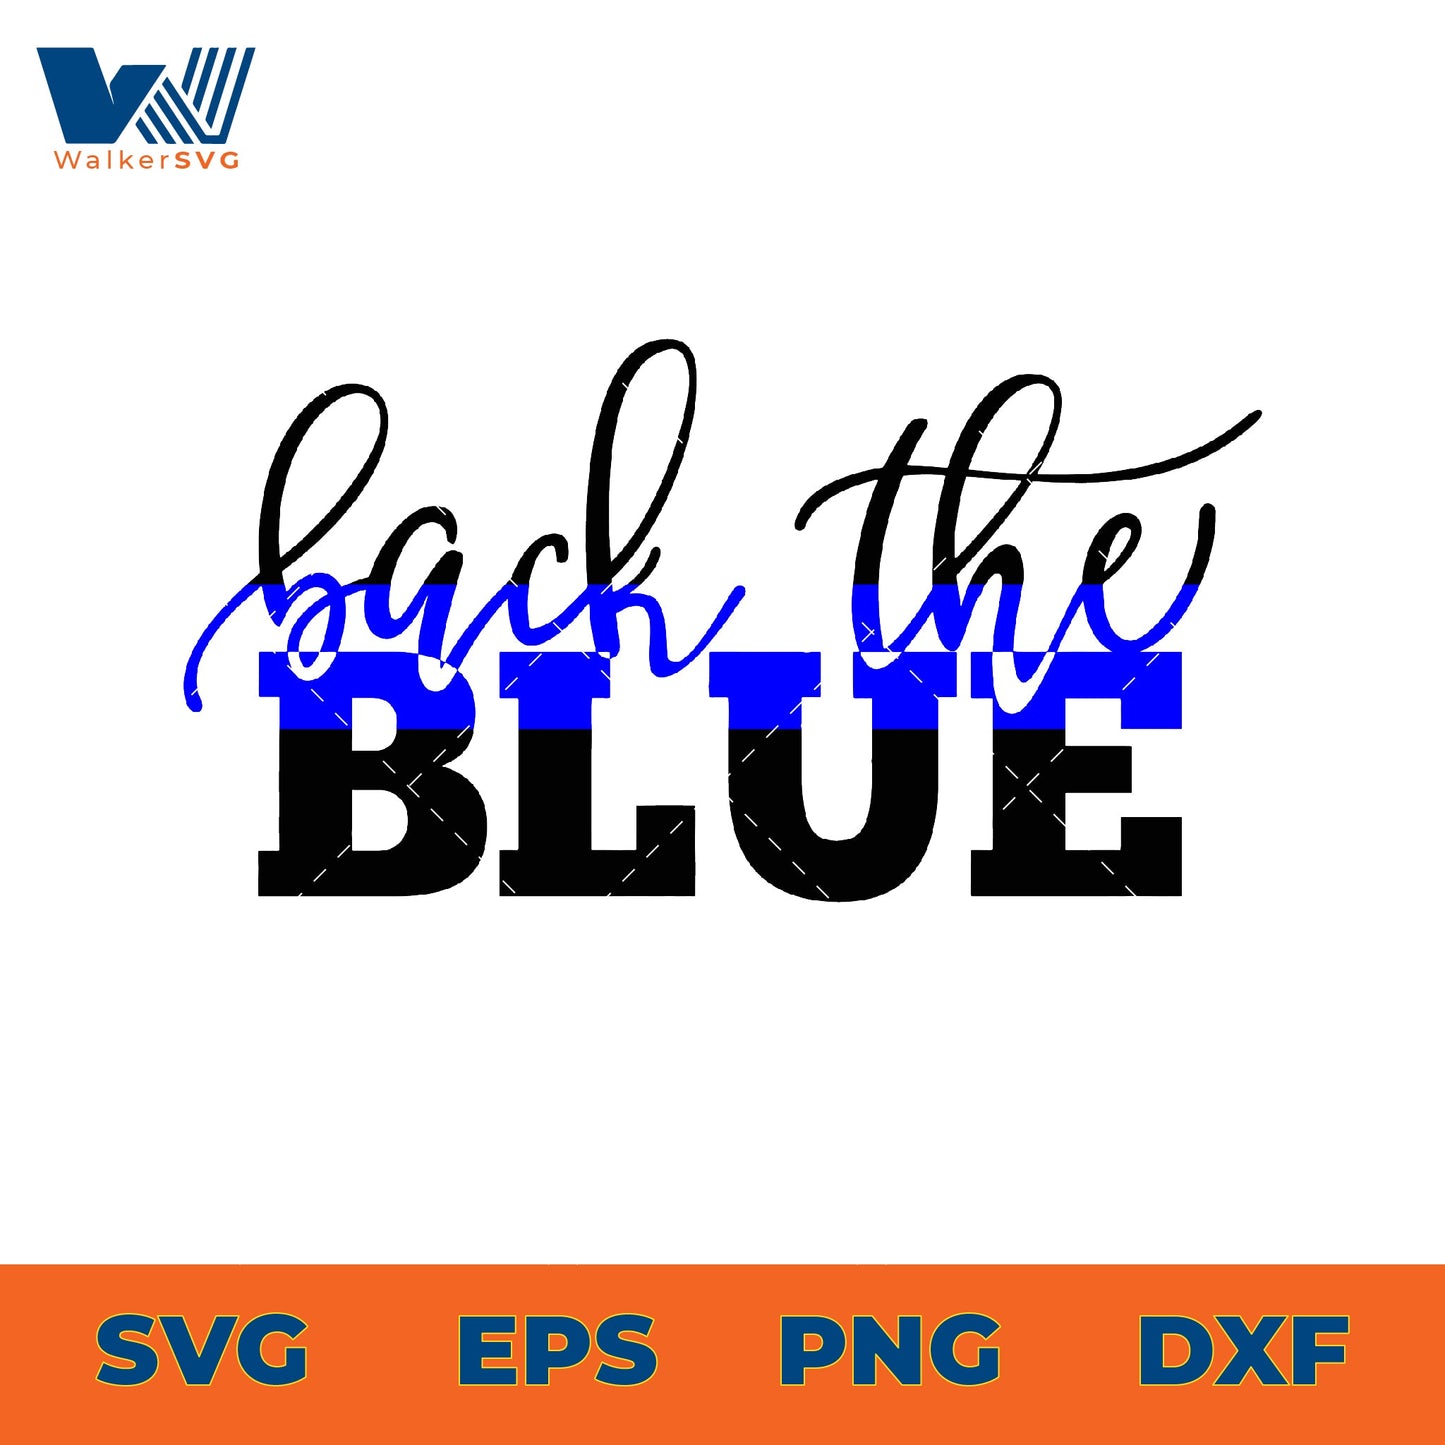 Back The Blue SVG